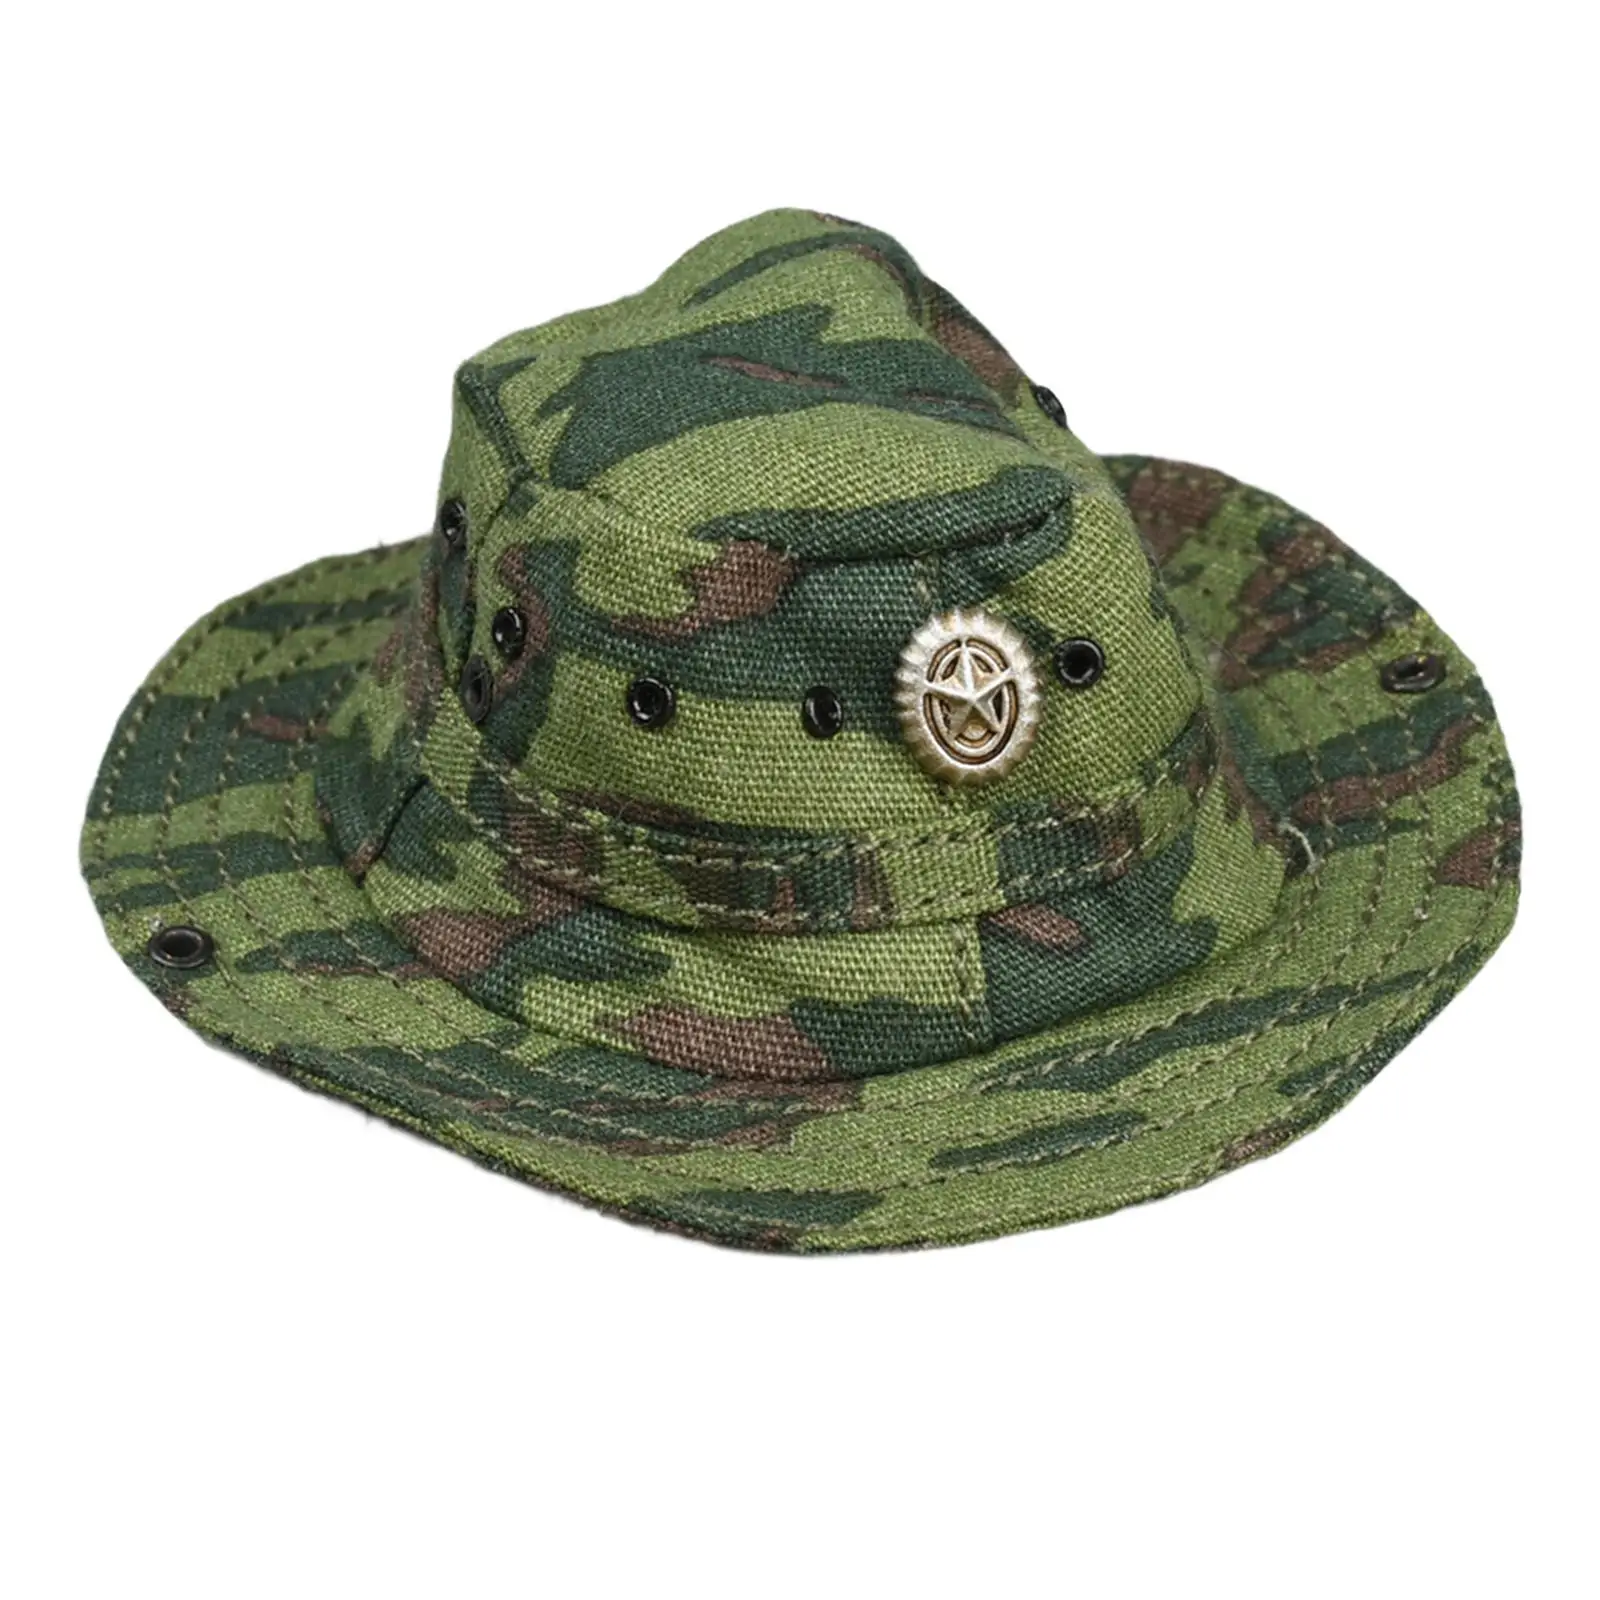 

Коллекция 1/6 года, зеленая камуфляжная шляпа солдатика, модель, классические аксессуары ручной работы, длина 6 см, мини-костюм для 12-дюймовой экшн-проекции